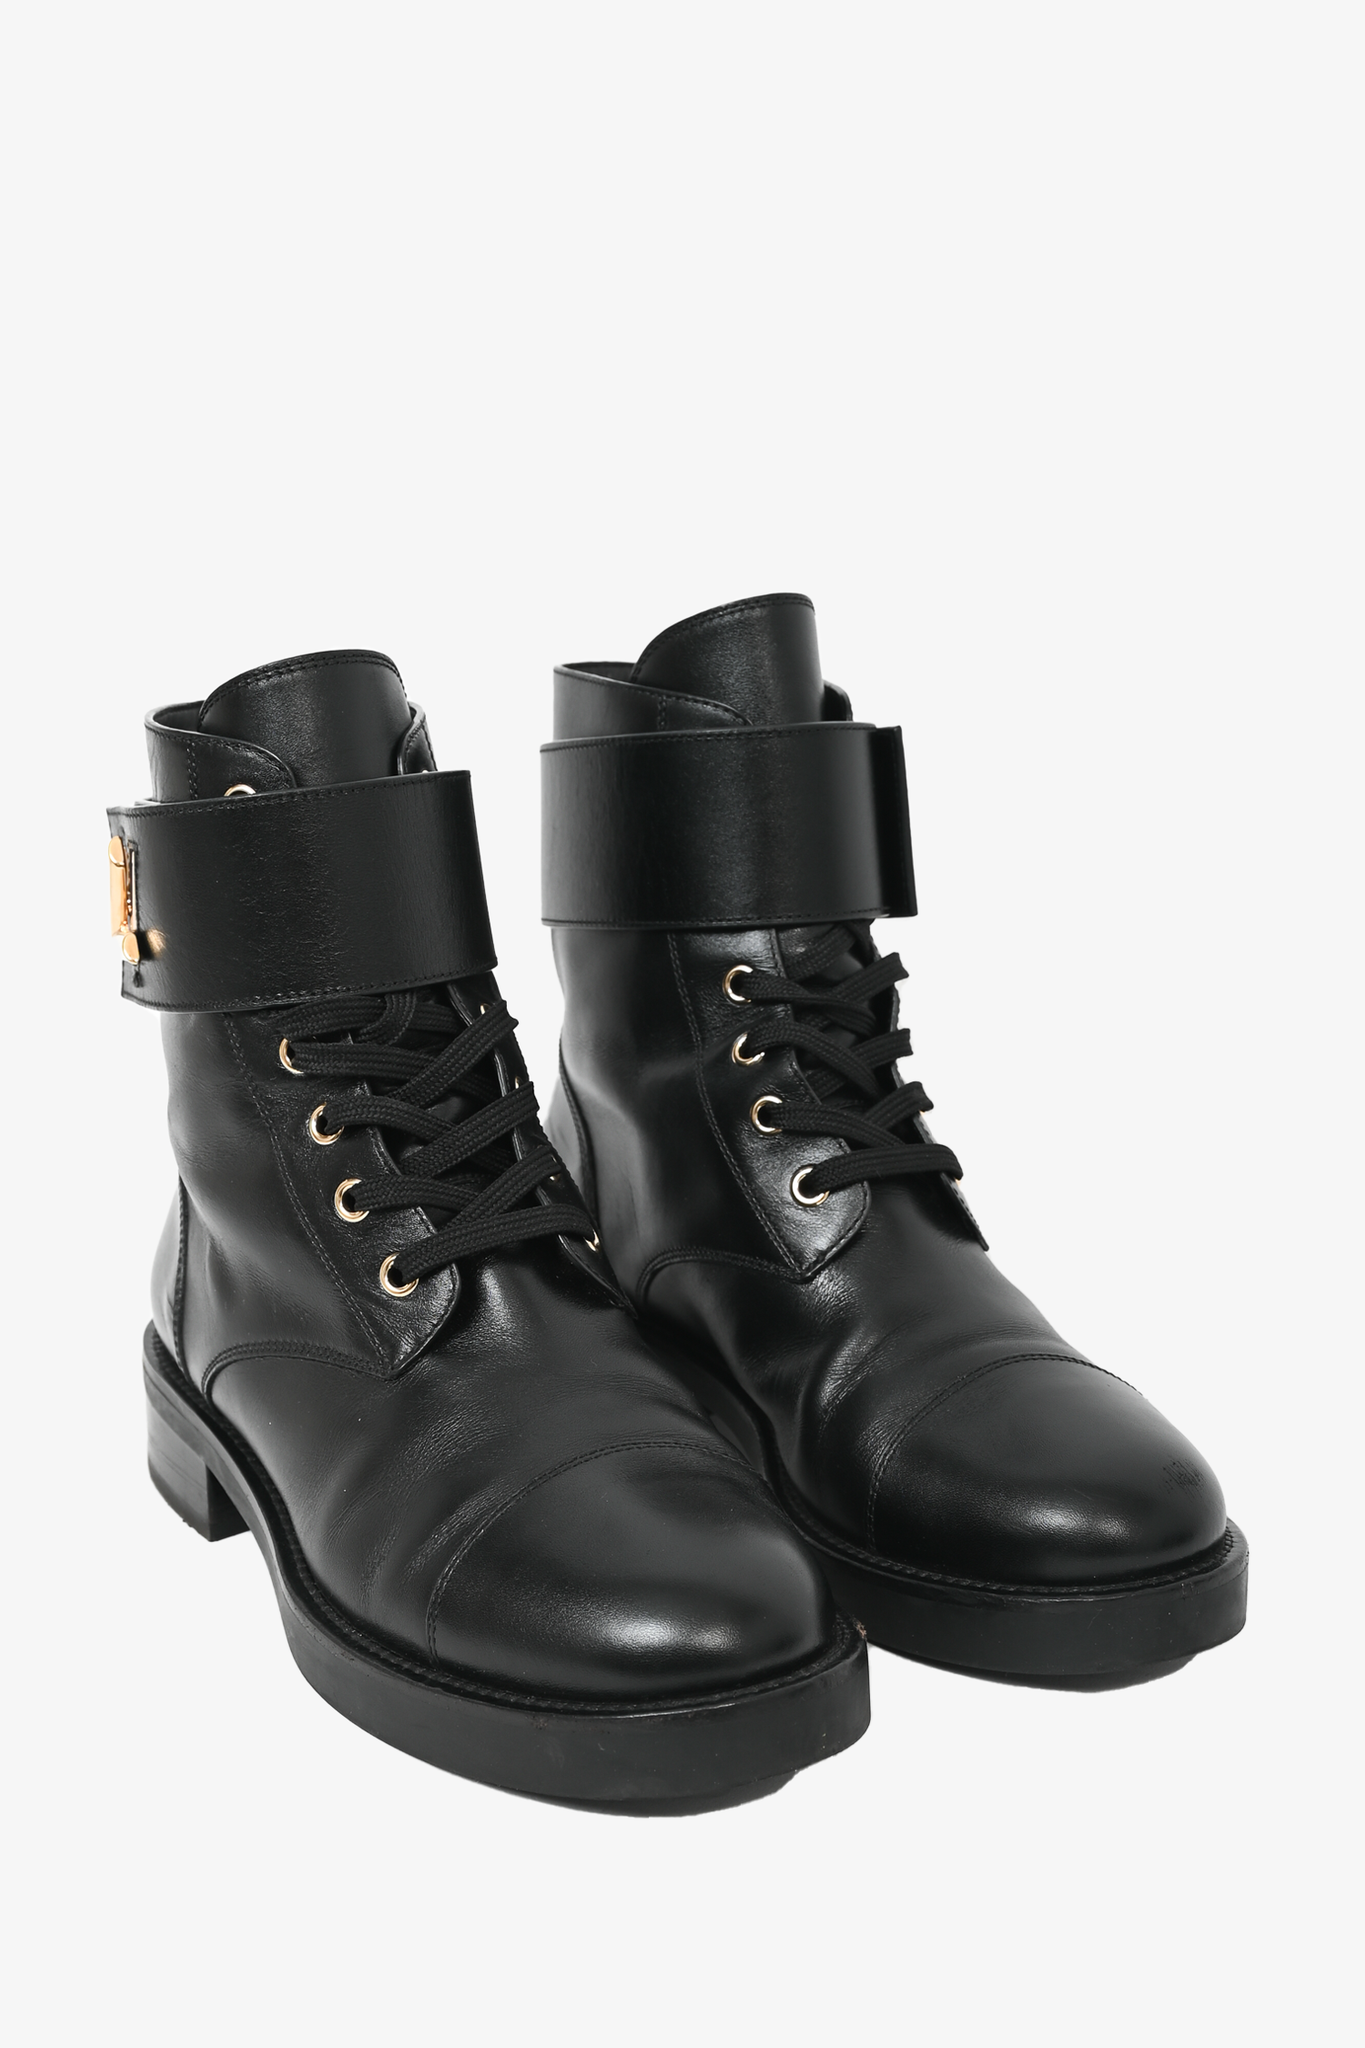 Louis Vuitton combat boots sise 38,5